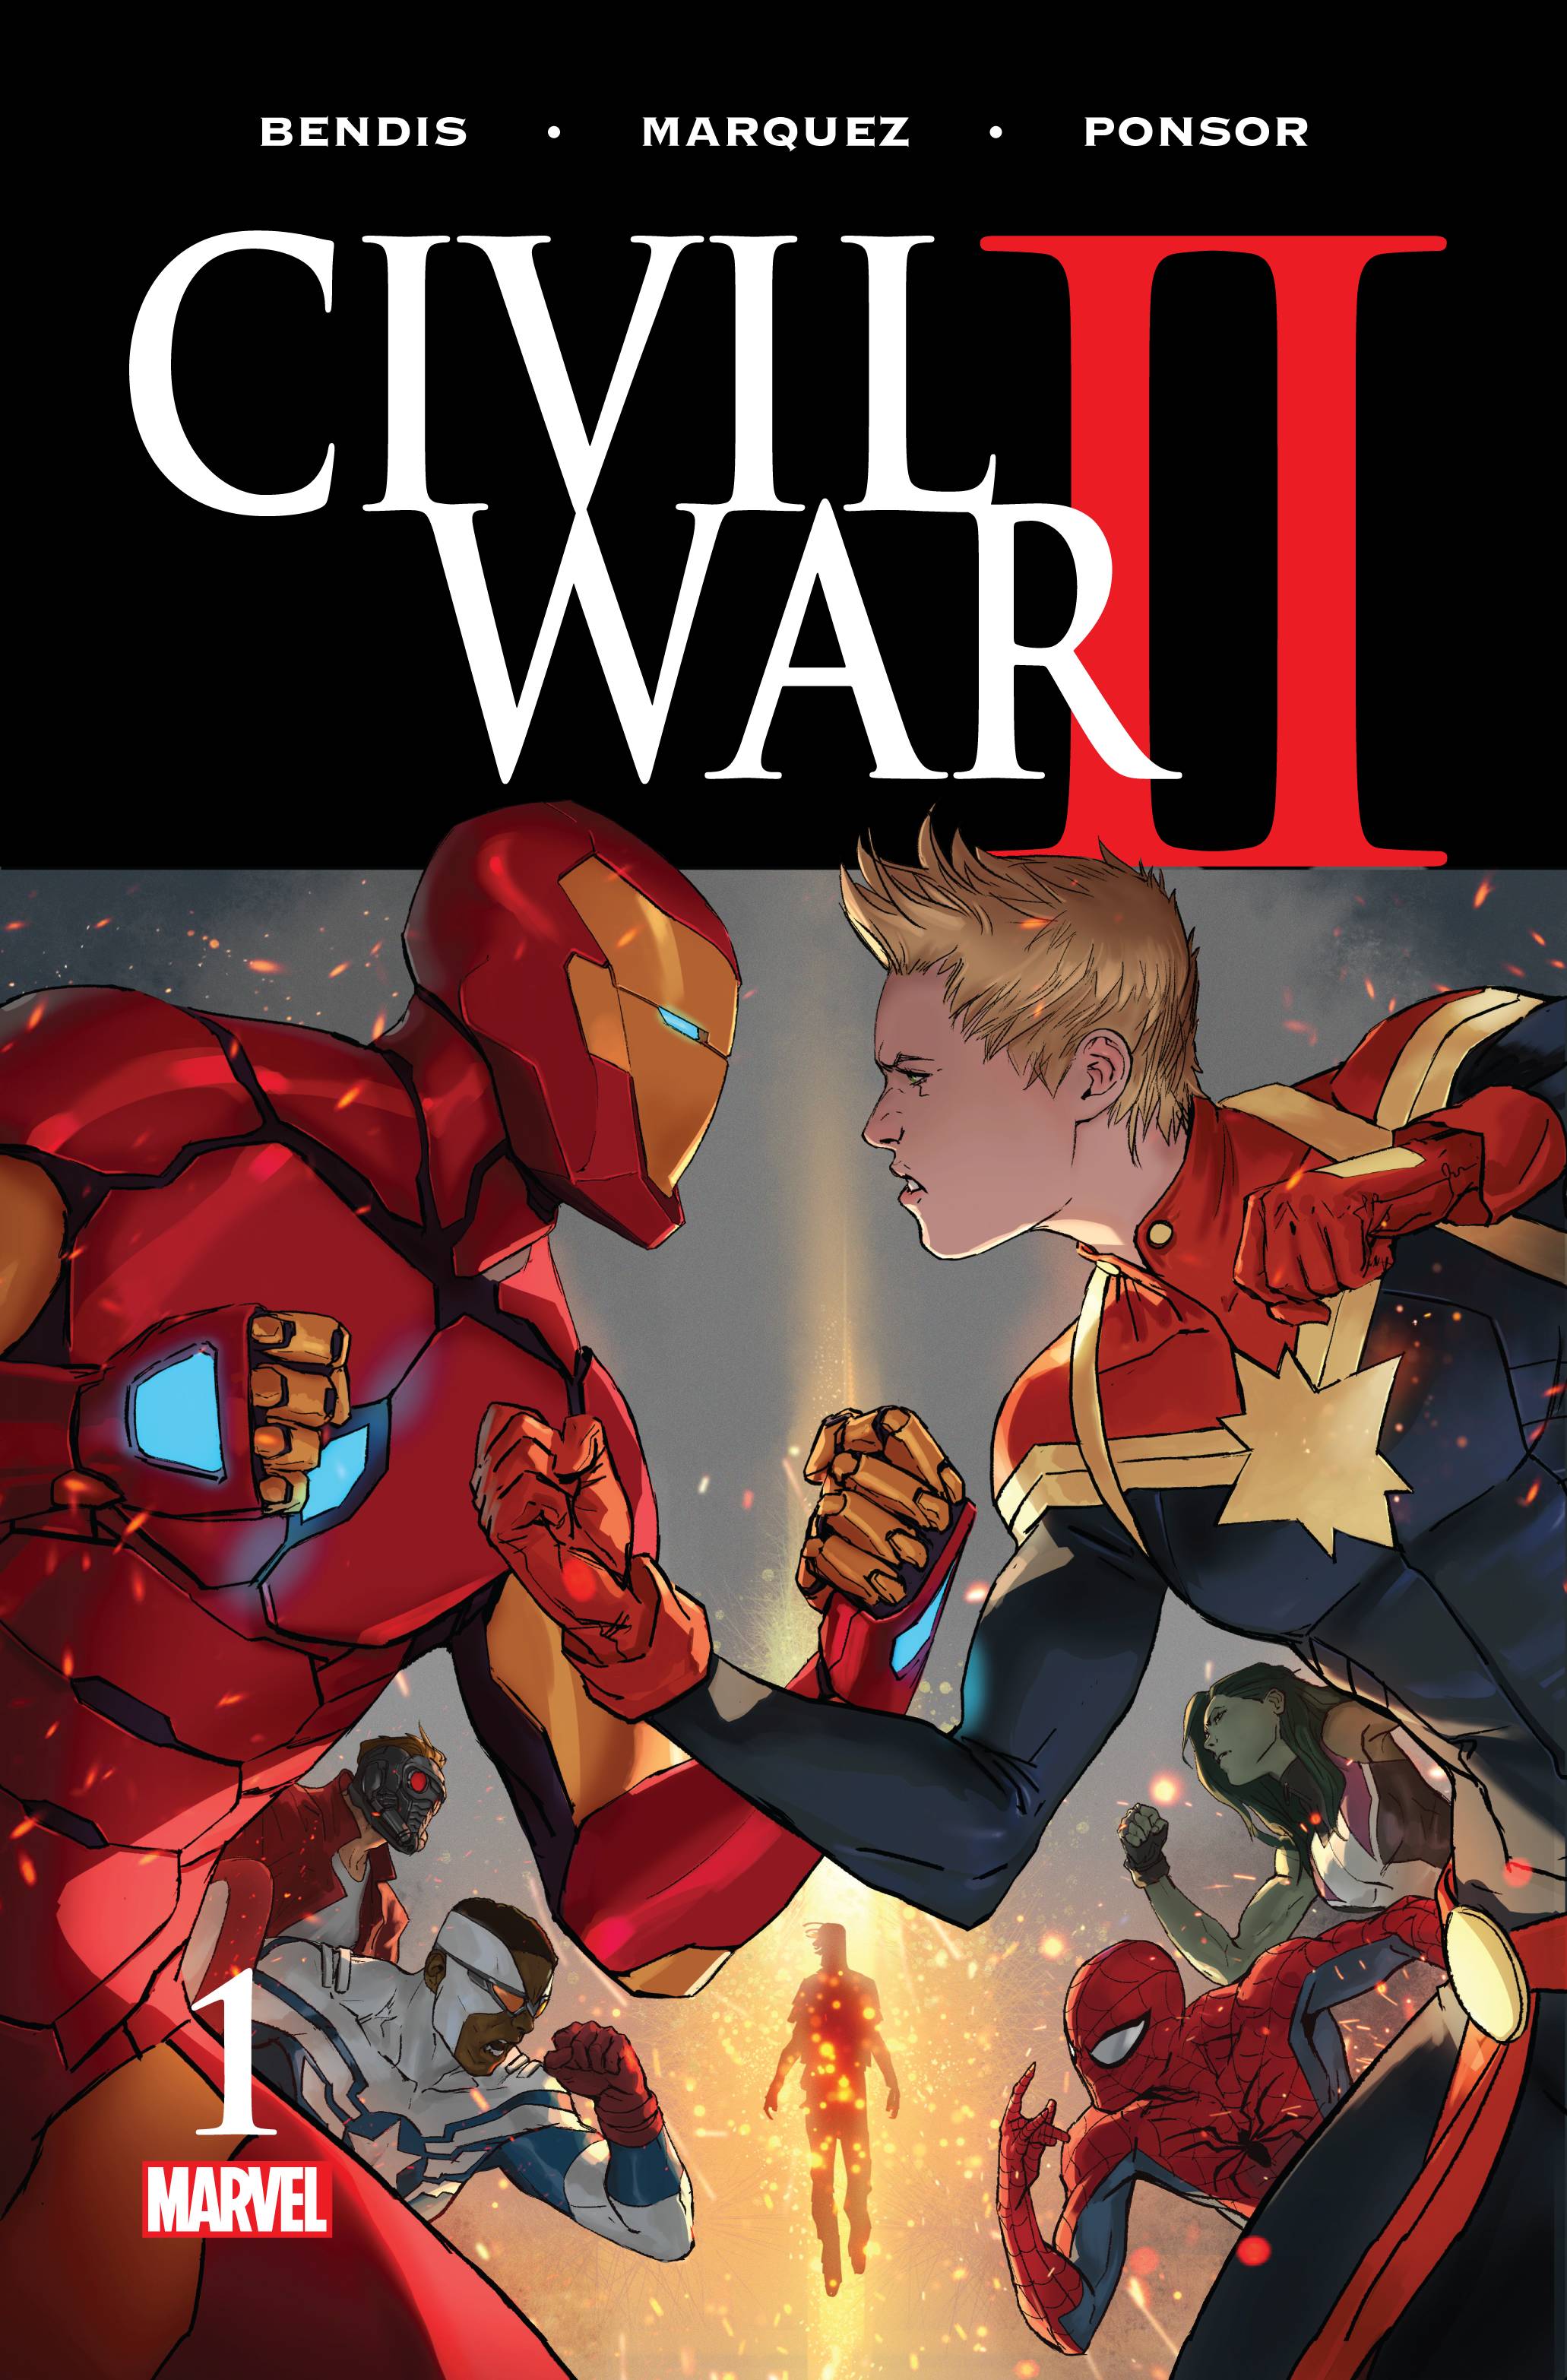 Civil War II #1 (2016)